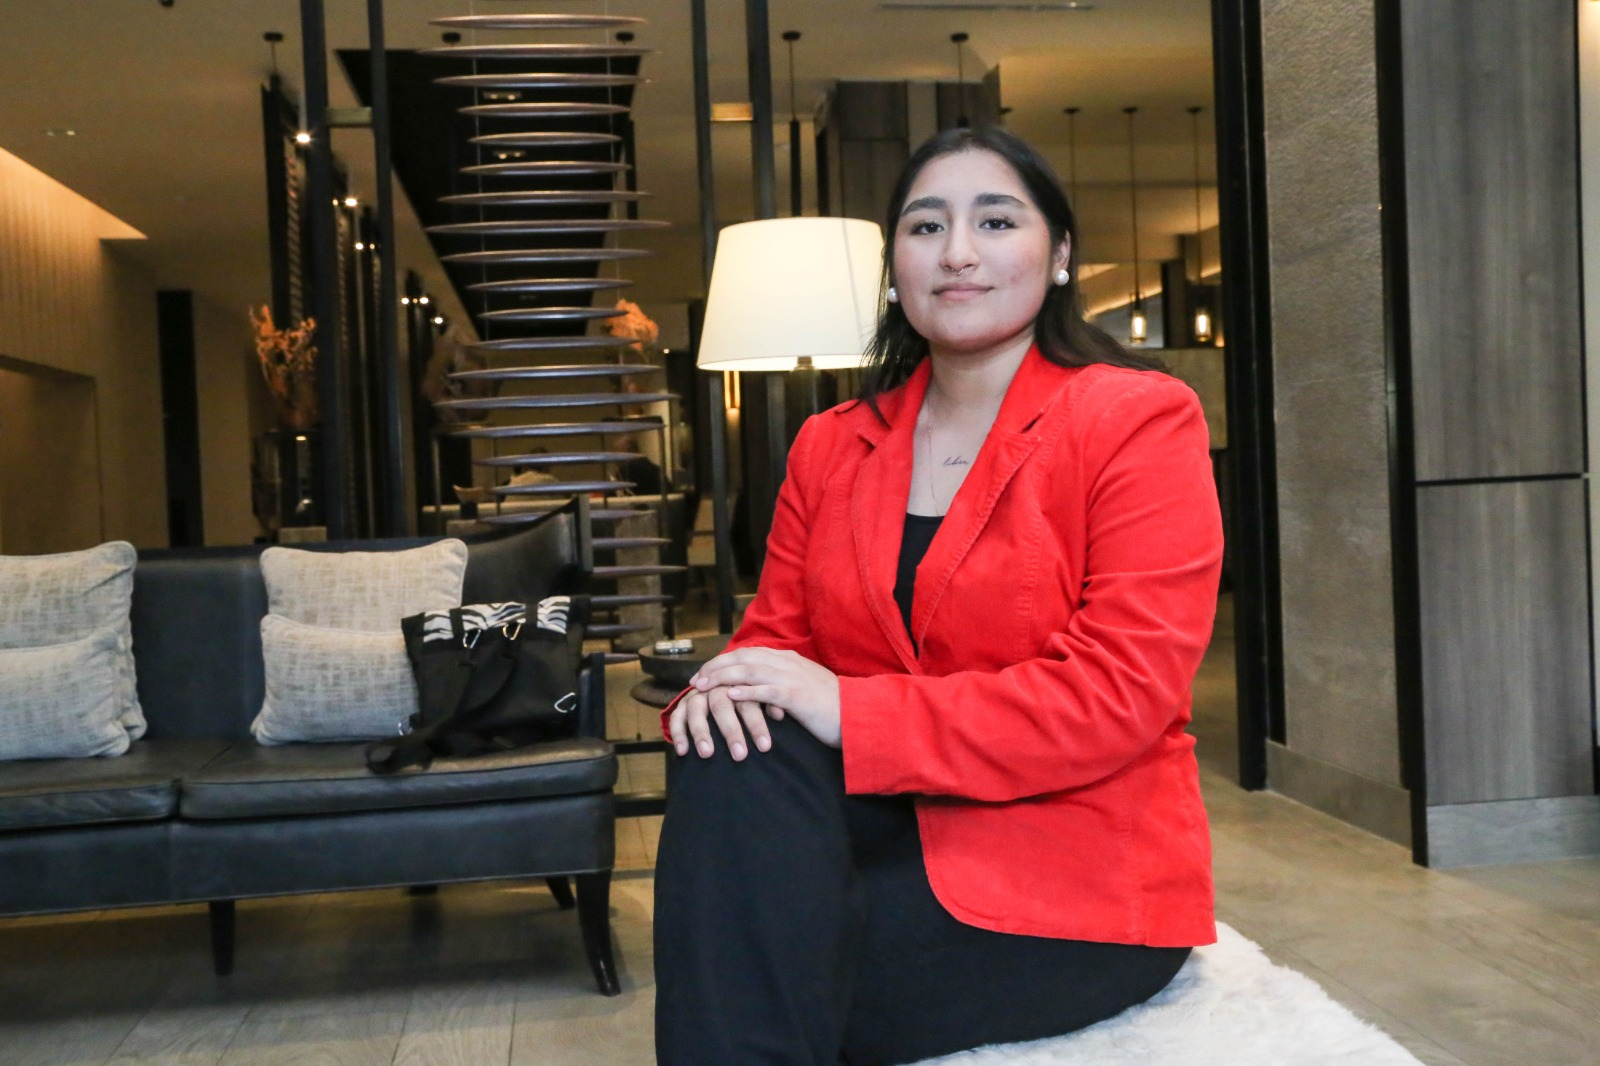 La mirada de la juventud que dará nuevos aires para un nuevo Chile: Constanza Aguilar, desde Magallanes, la candidata al consejo constitucional más joven del país